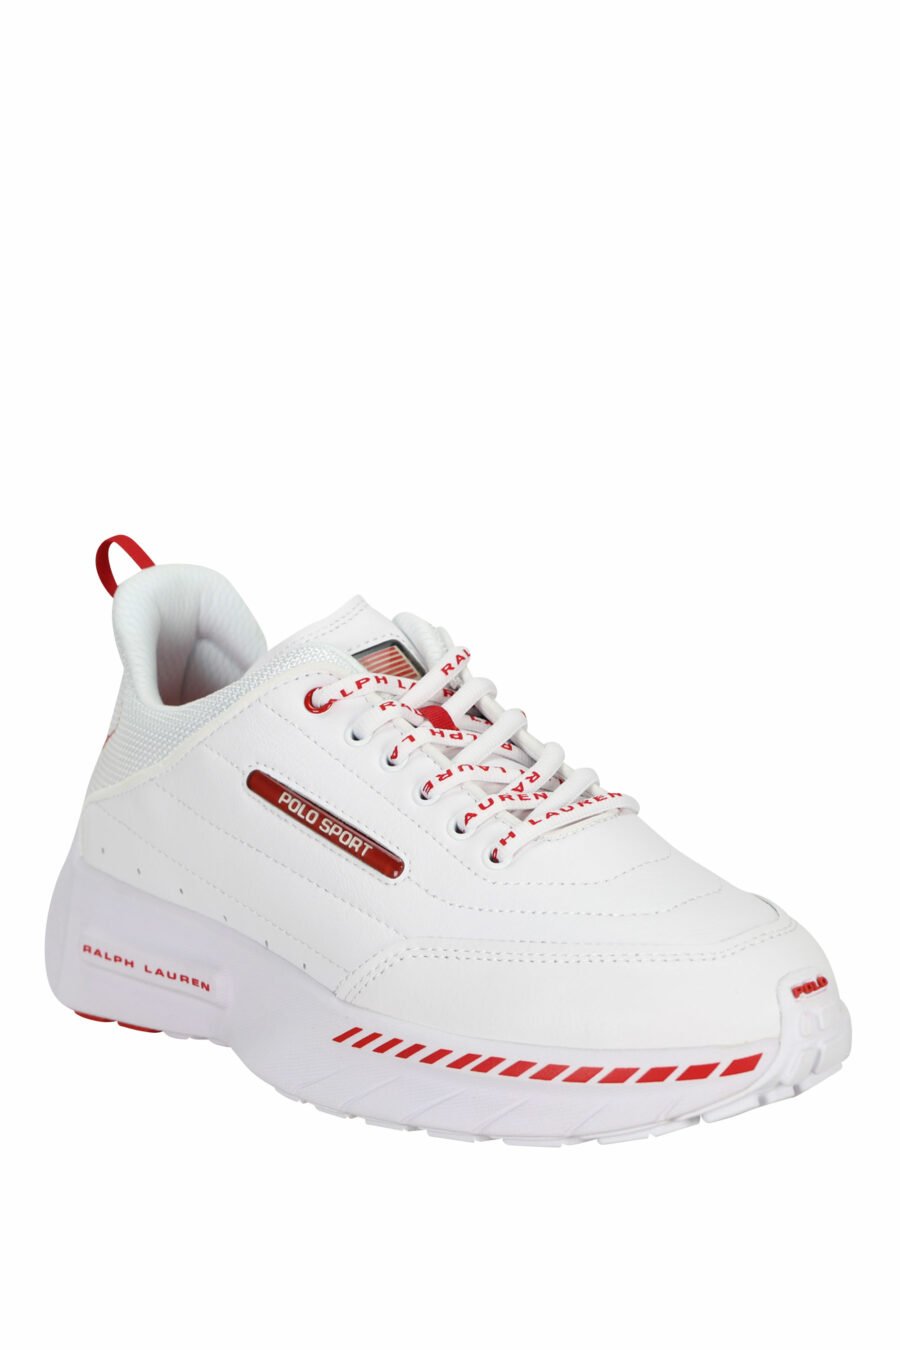 Zapatillas blancas con minilogo y detalles rojos - 3616535649279 1